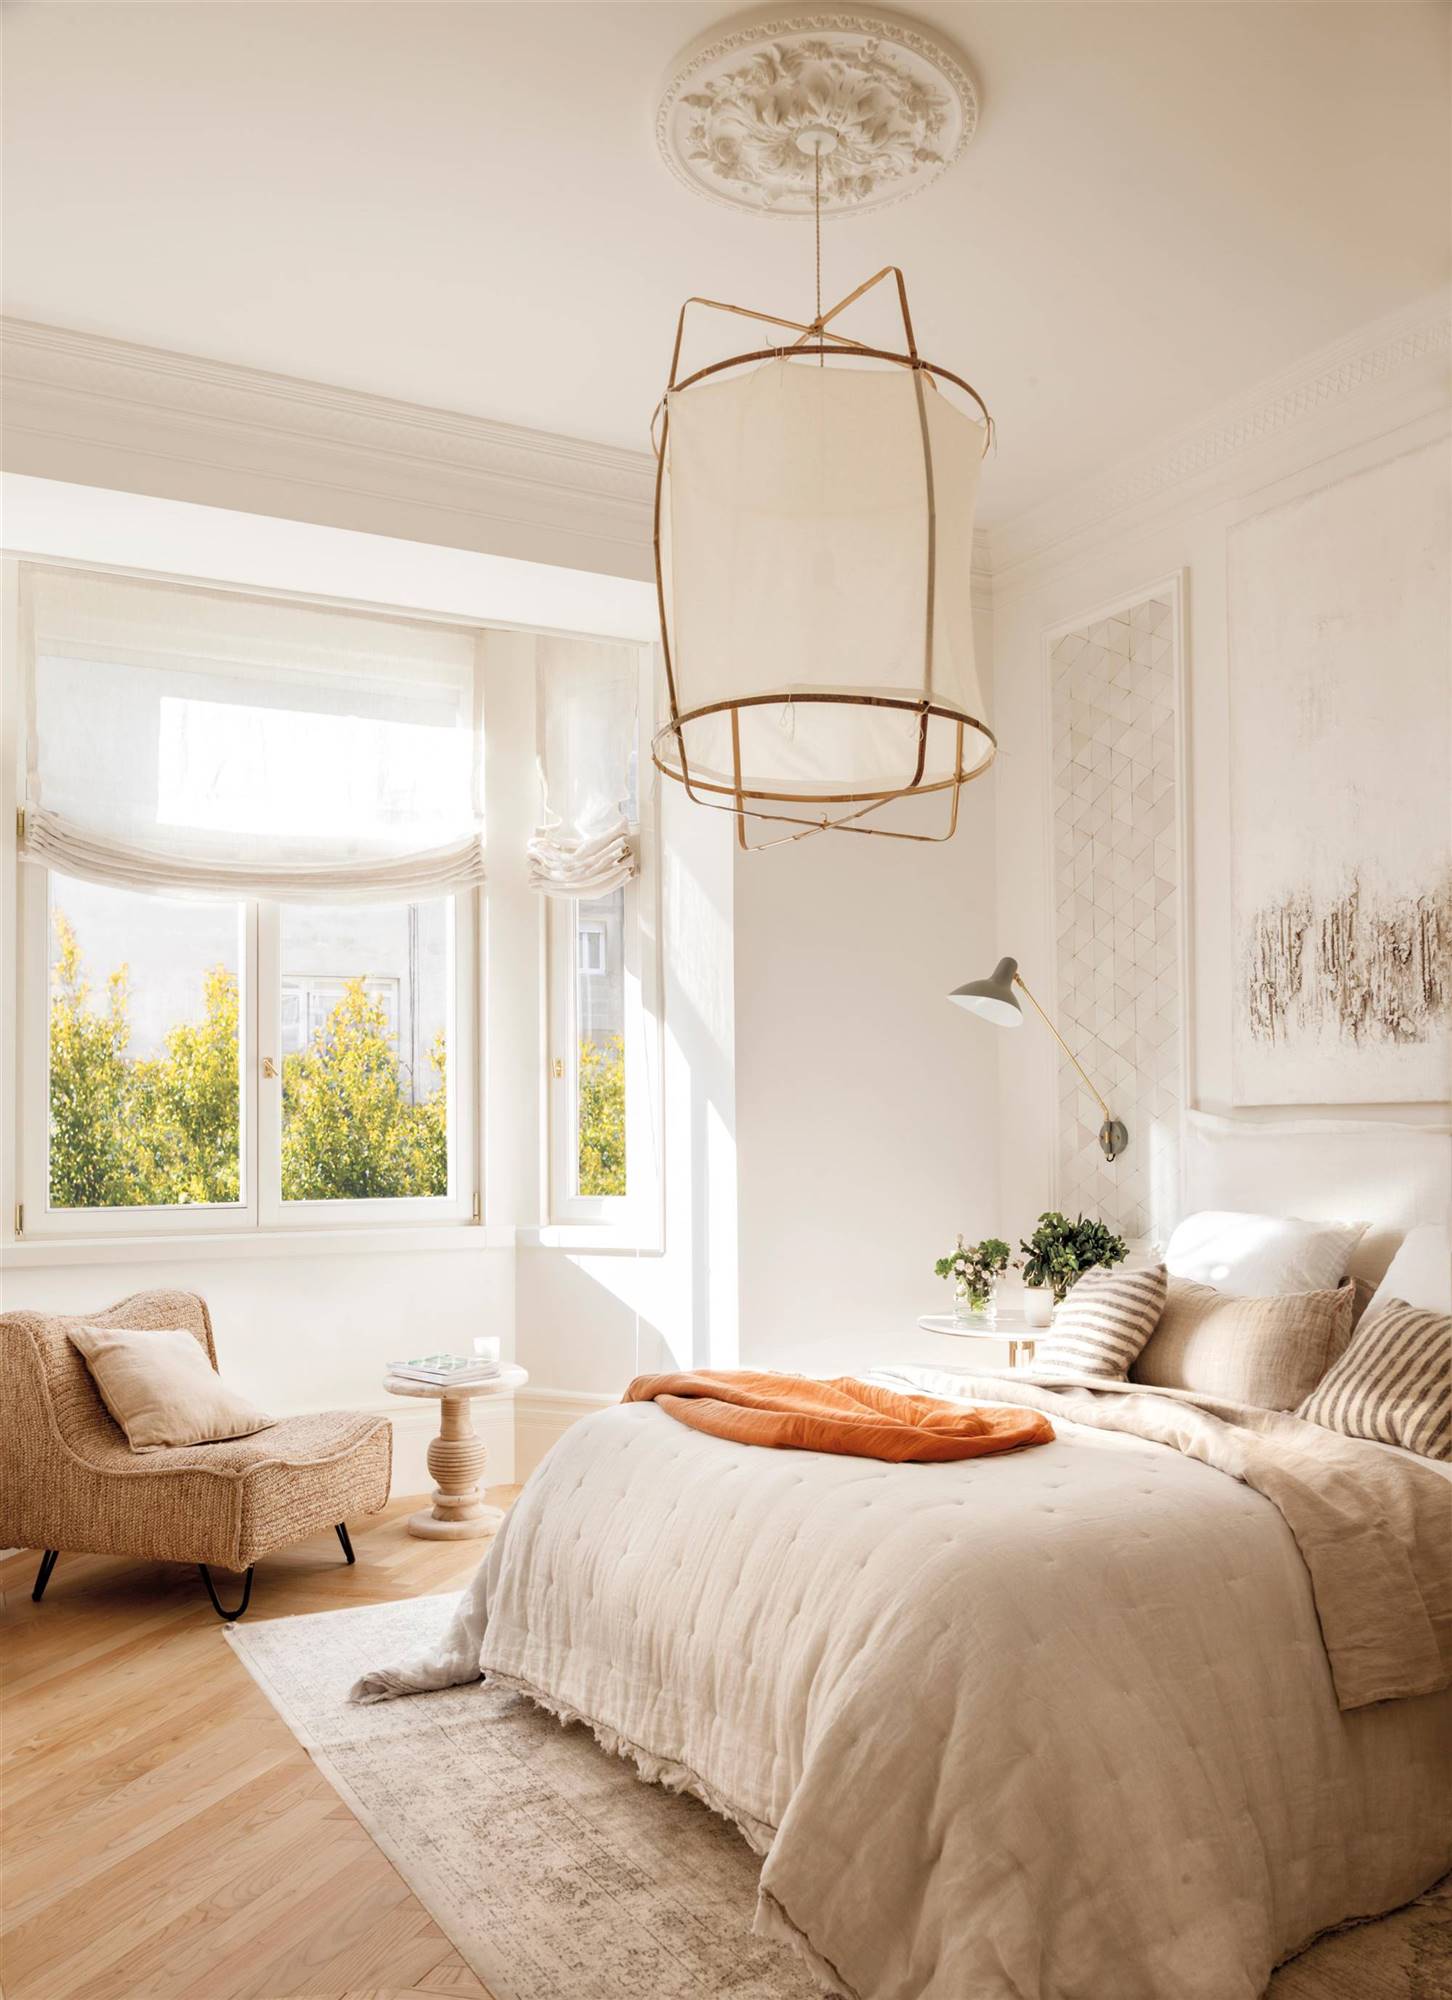 Dormitorio de otoño en blanco y con detalles clásicos